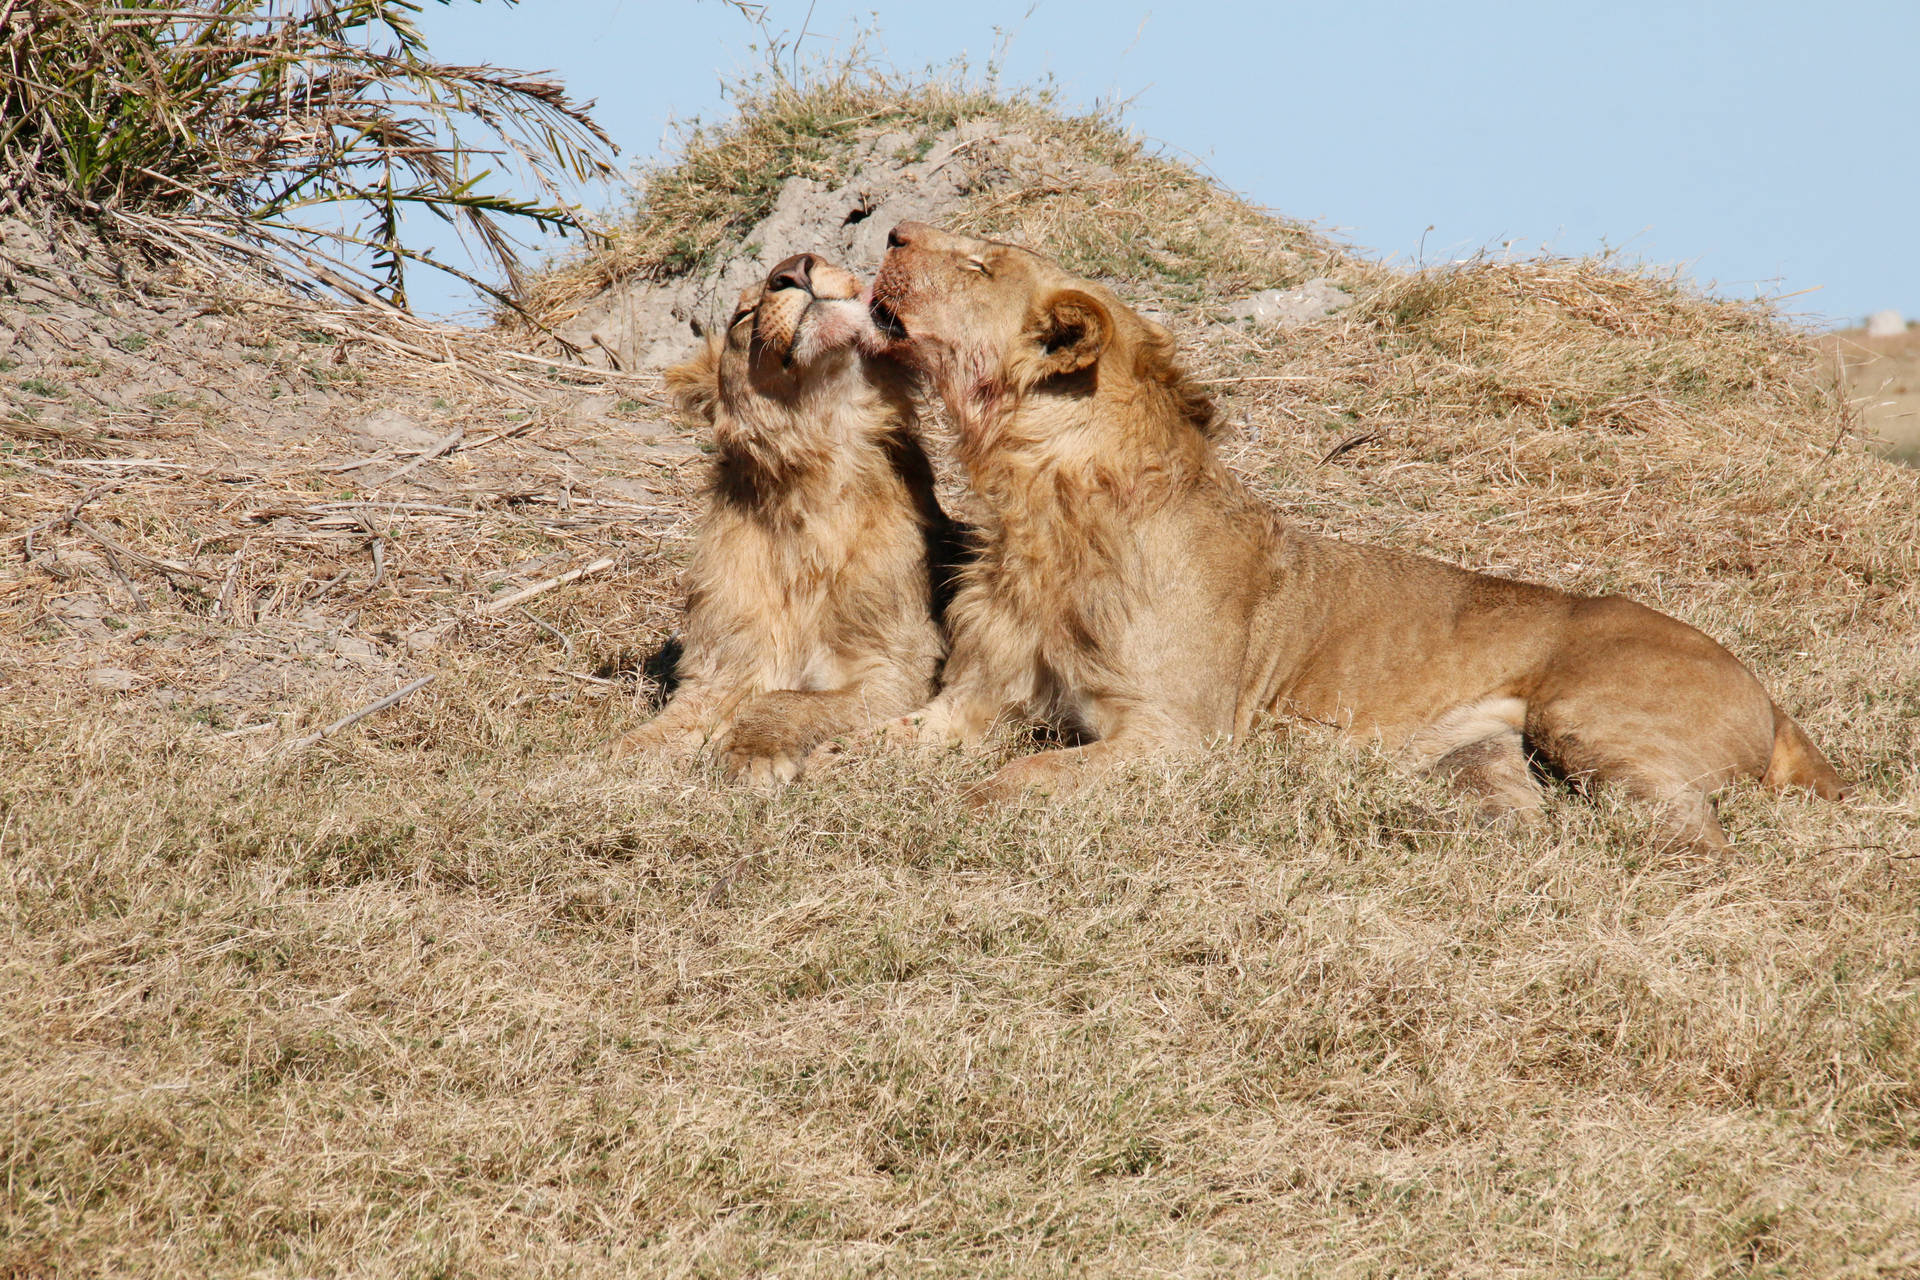 Botswana Lions Nuzzling